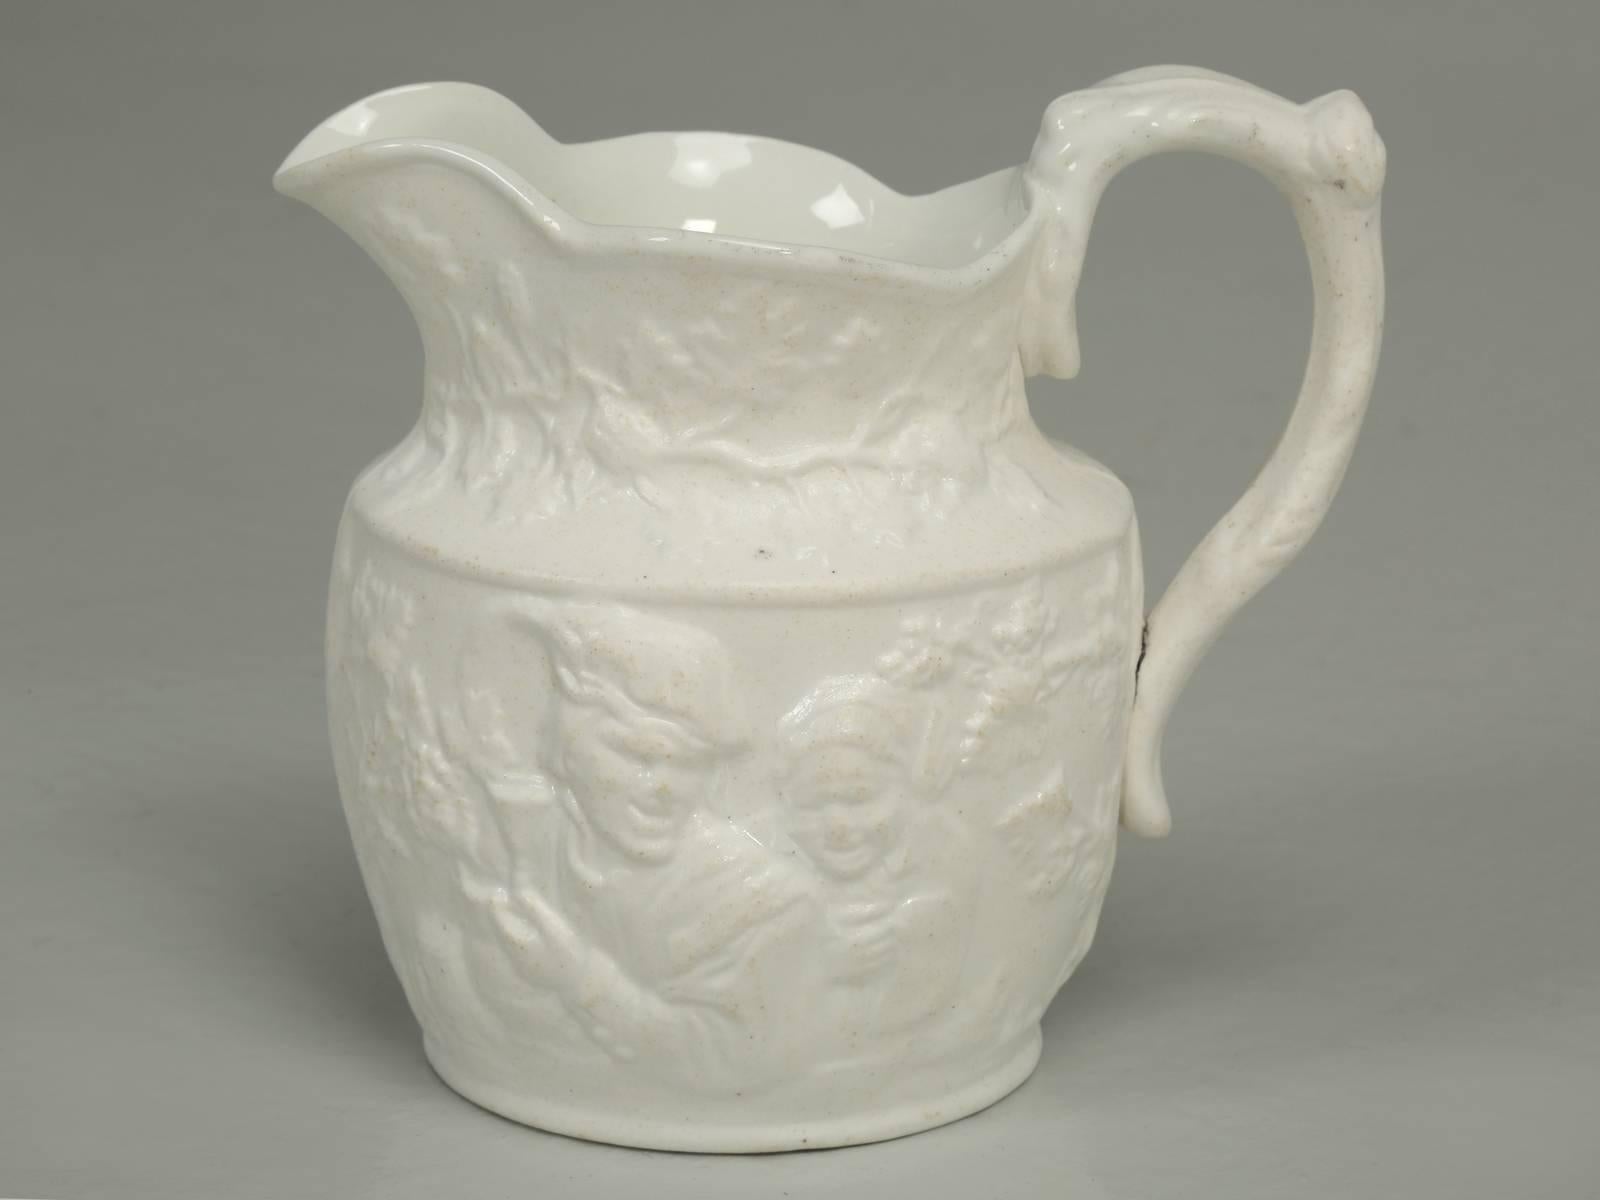 Antique English Porcelain Jug or Pitcher 1